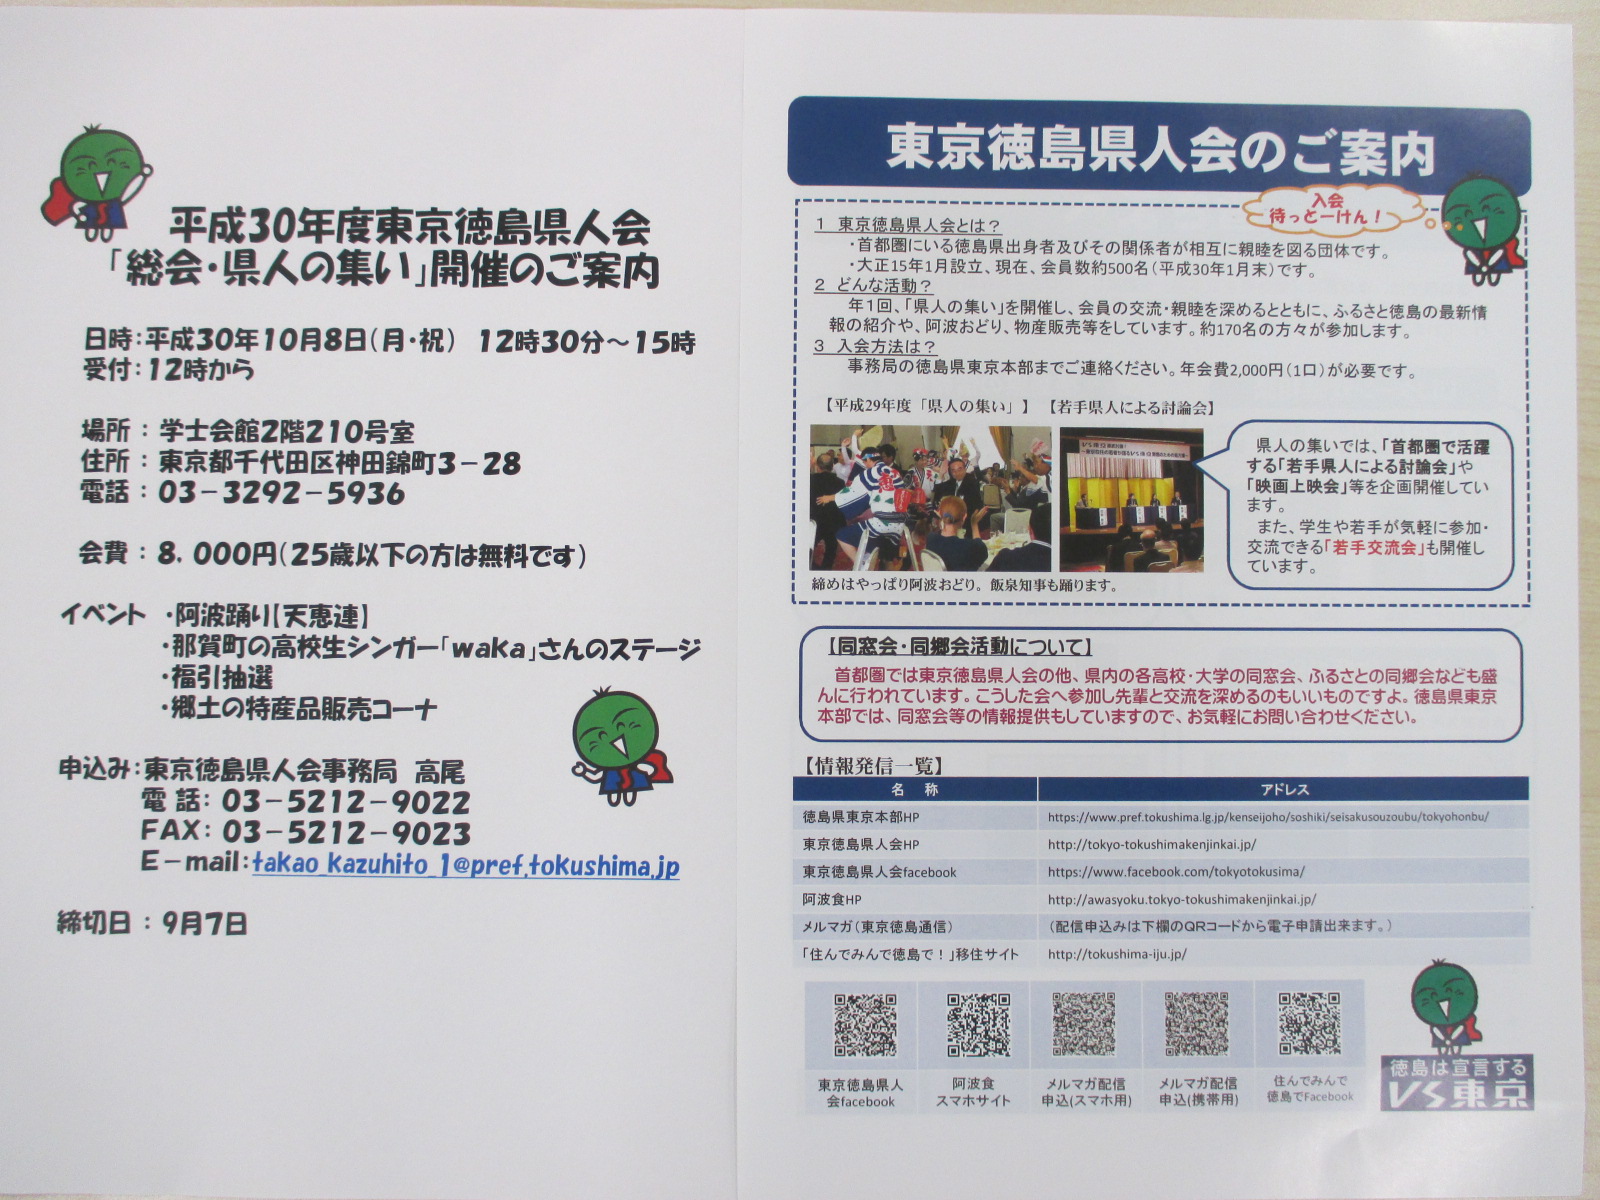 「平成３０年度東京徳島県人会」開催のお知らせ | 移住関連イベント情報